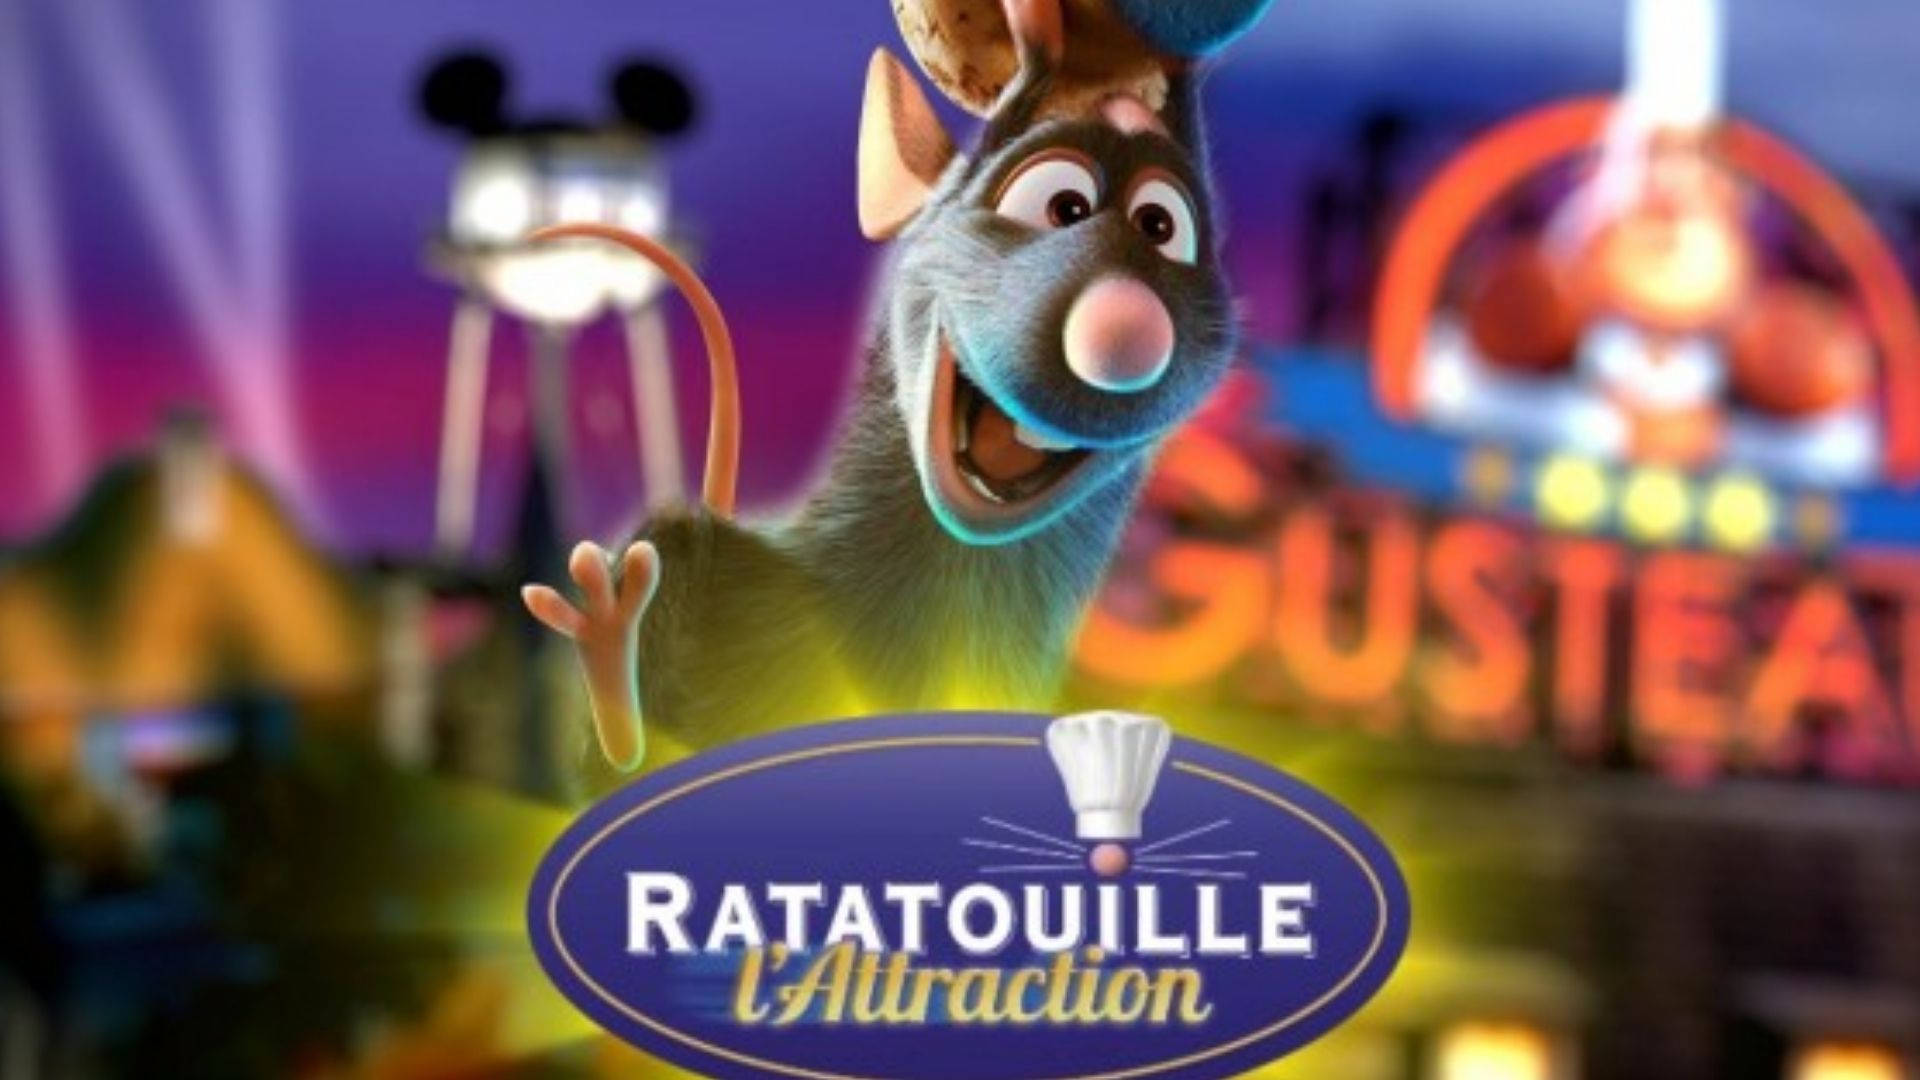 Ratatouille Gustea Attraction Wallpaper